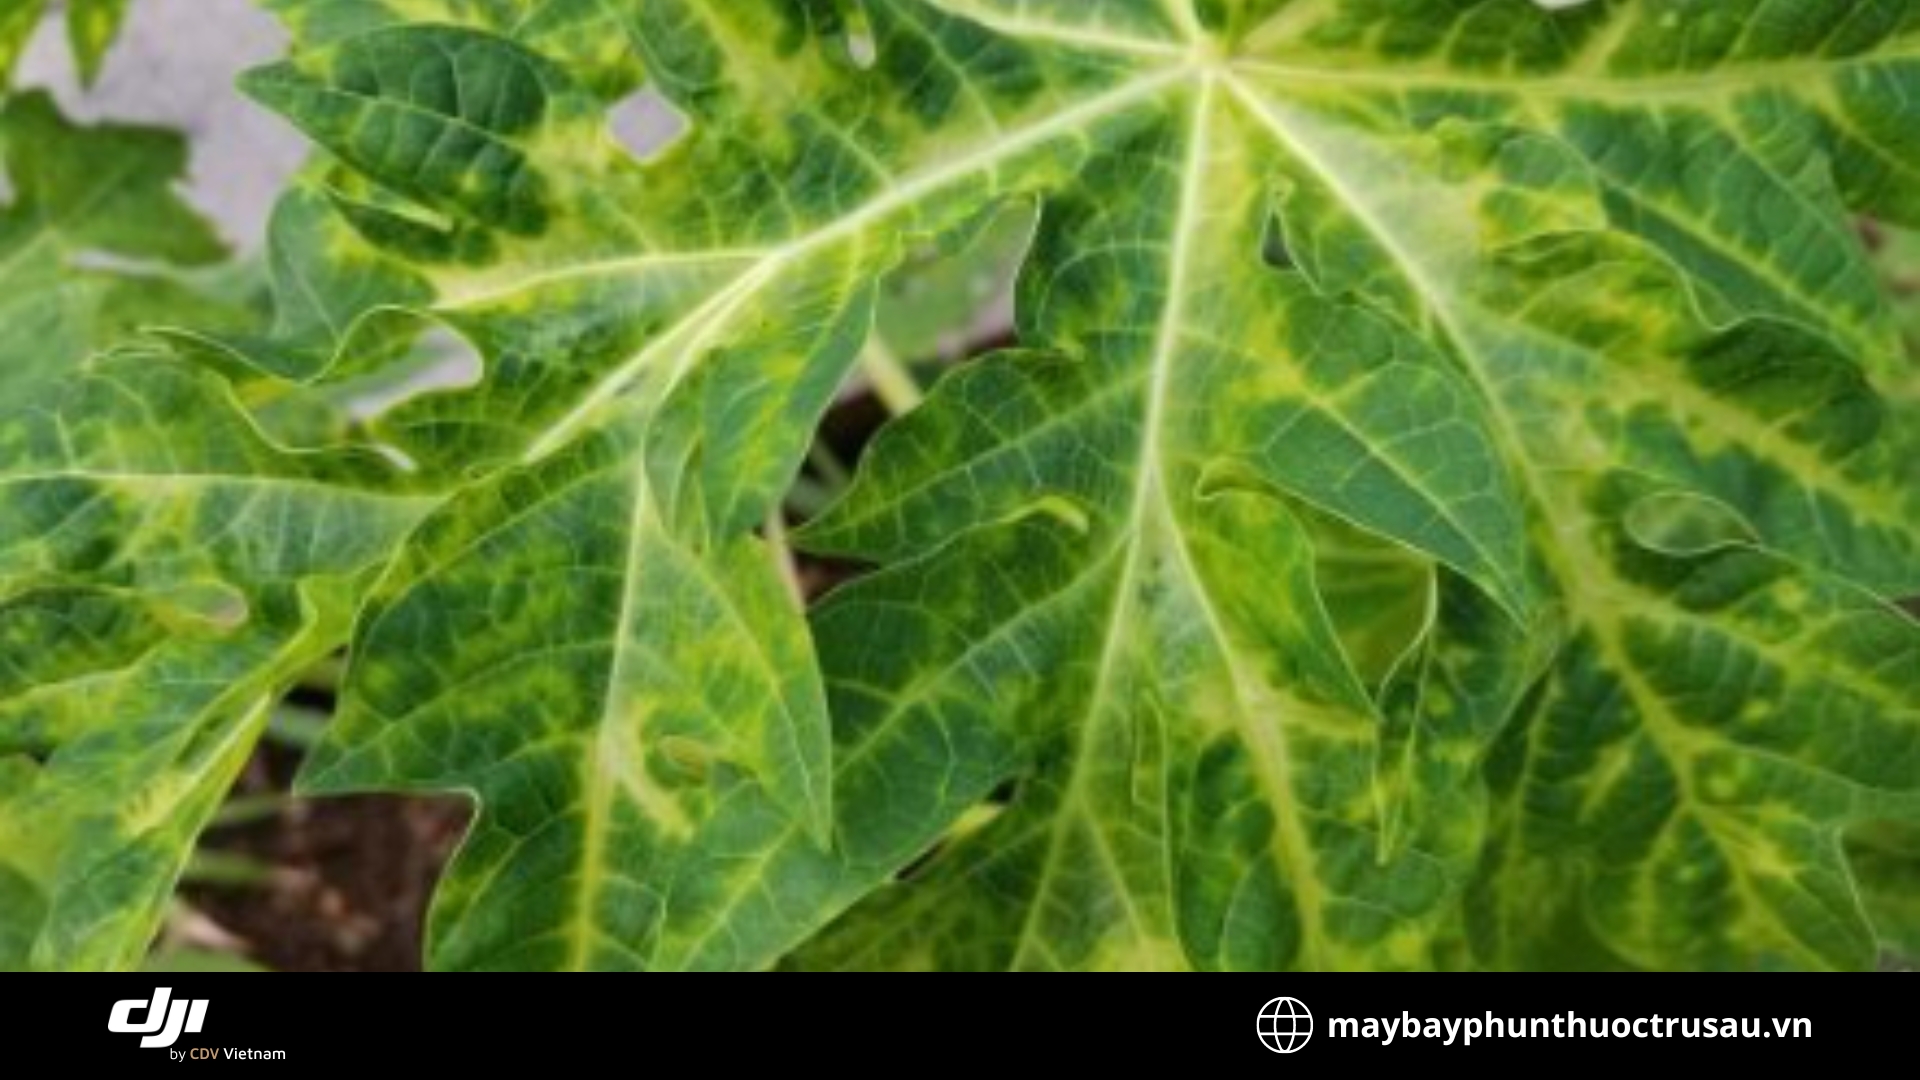 Bệnh cháy lá đu đủ (Papaya leaf blight)